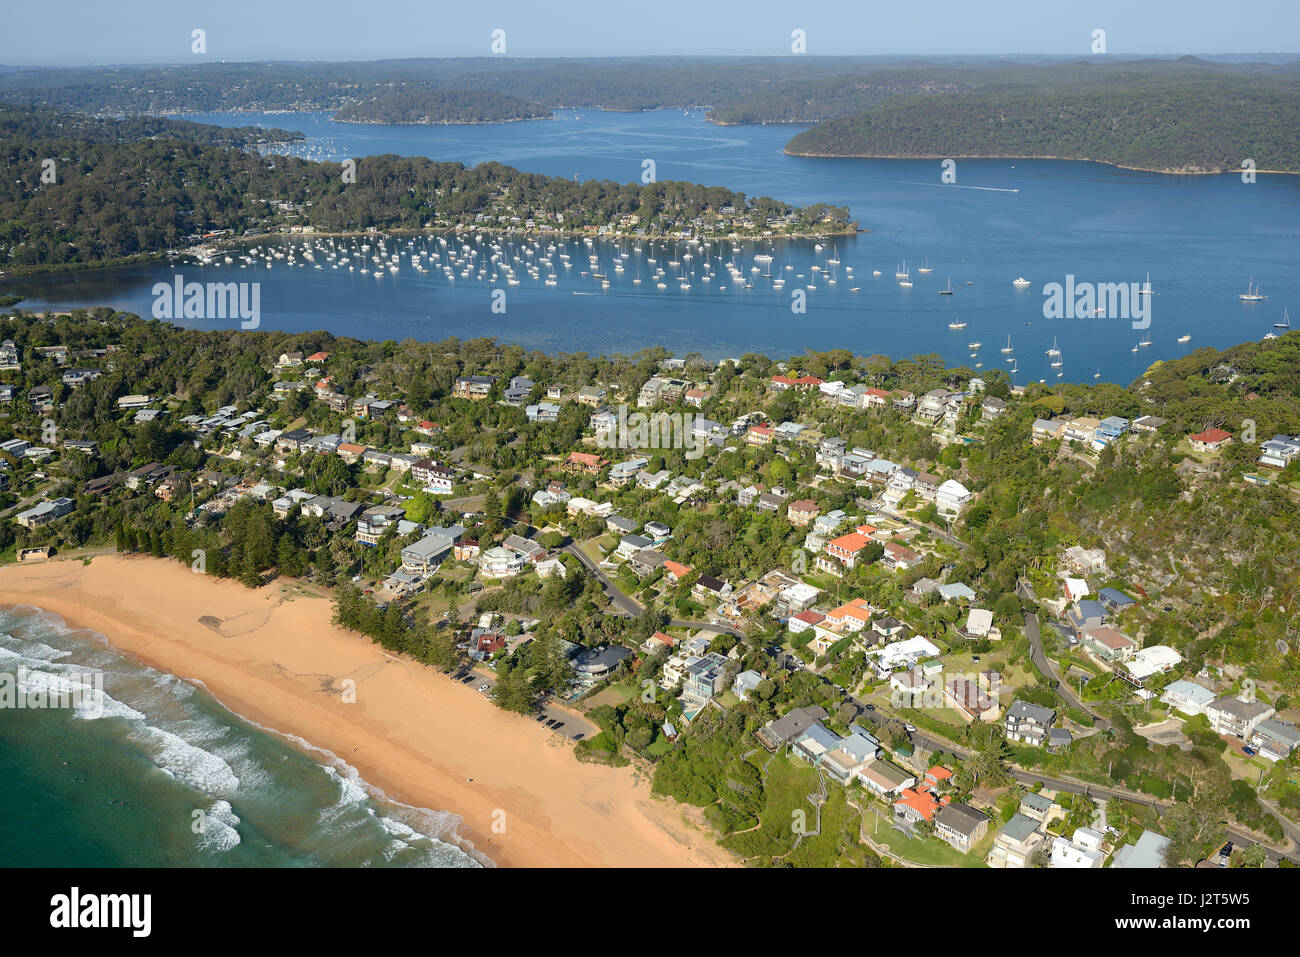 LUFTAUFNAHME. Strandstadt zwischen dem Pazifik und einem ria (einem ertrunkenen Flusstal). Whale Beach, Sydney, New South Wales, Australien. Stockfoto